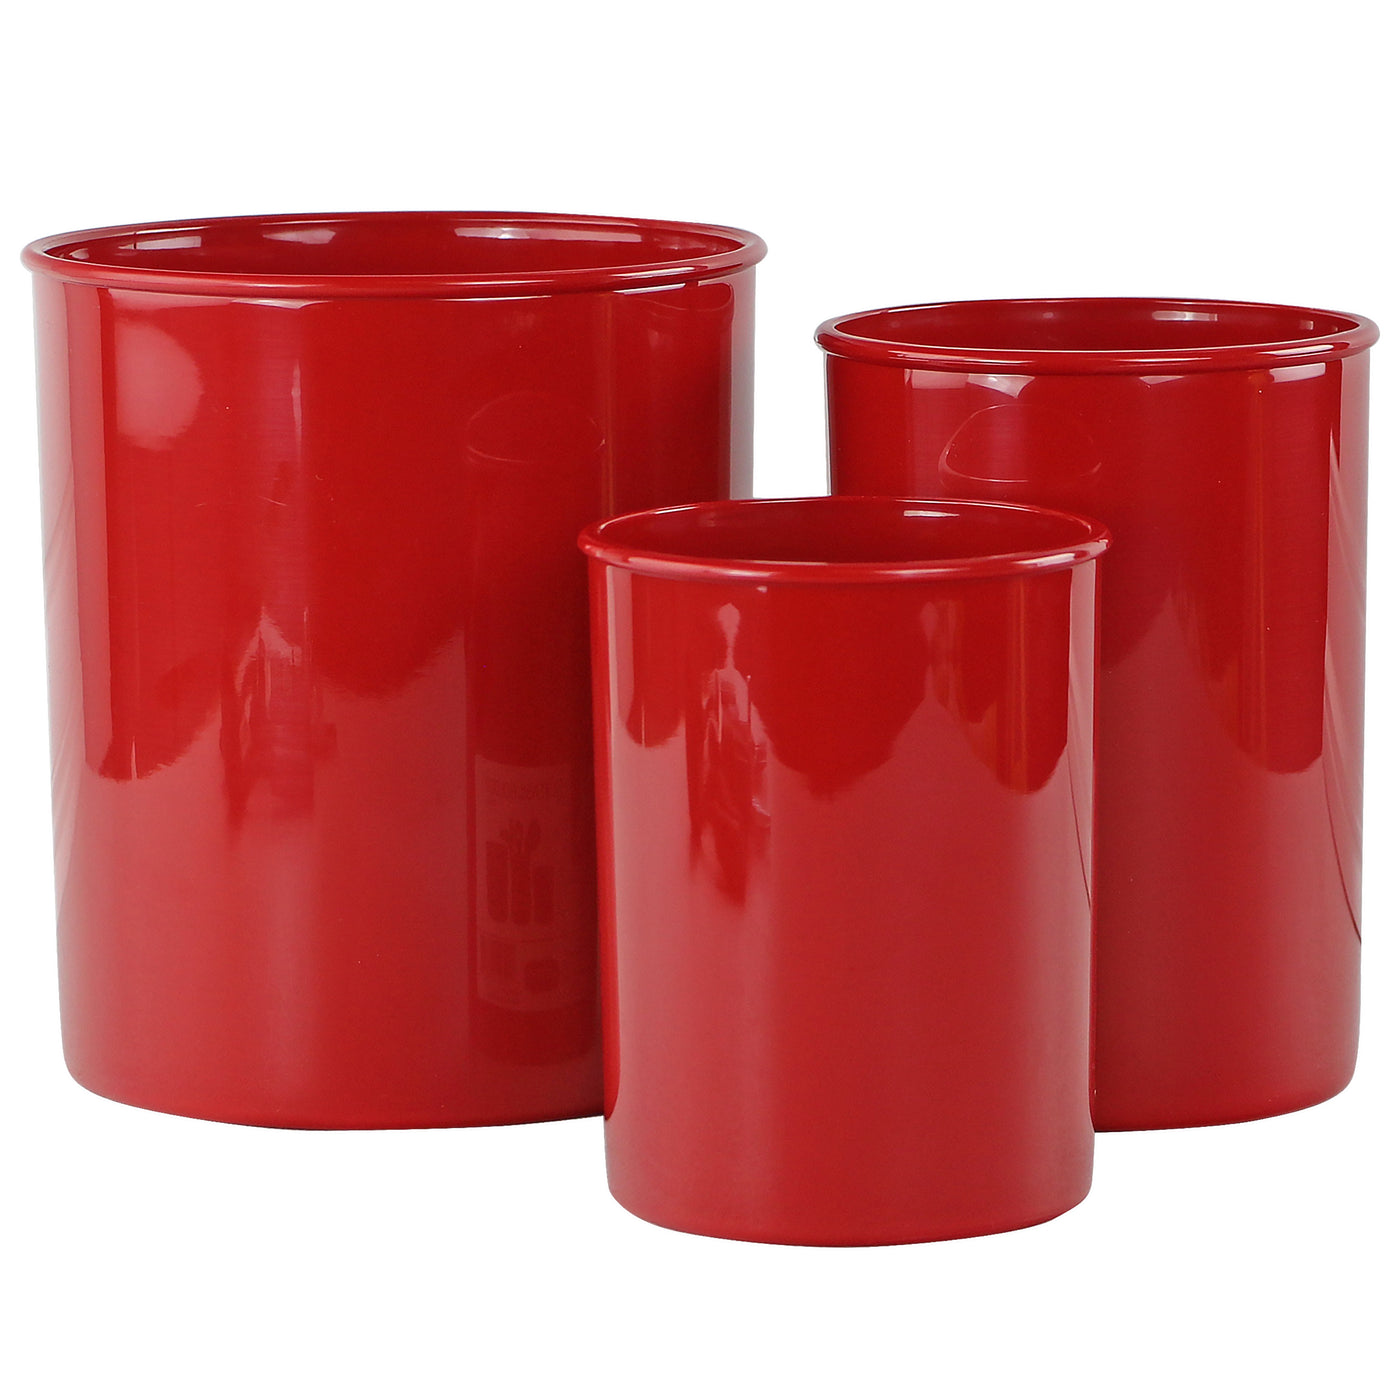 X-Large Plastic Utensil Holder, Red – Reston Lloyd